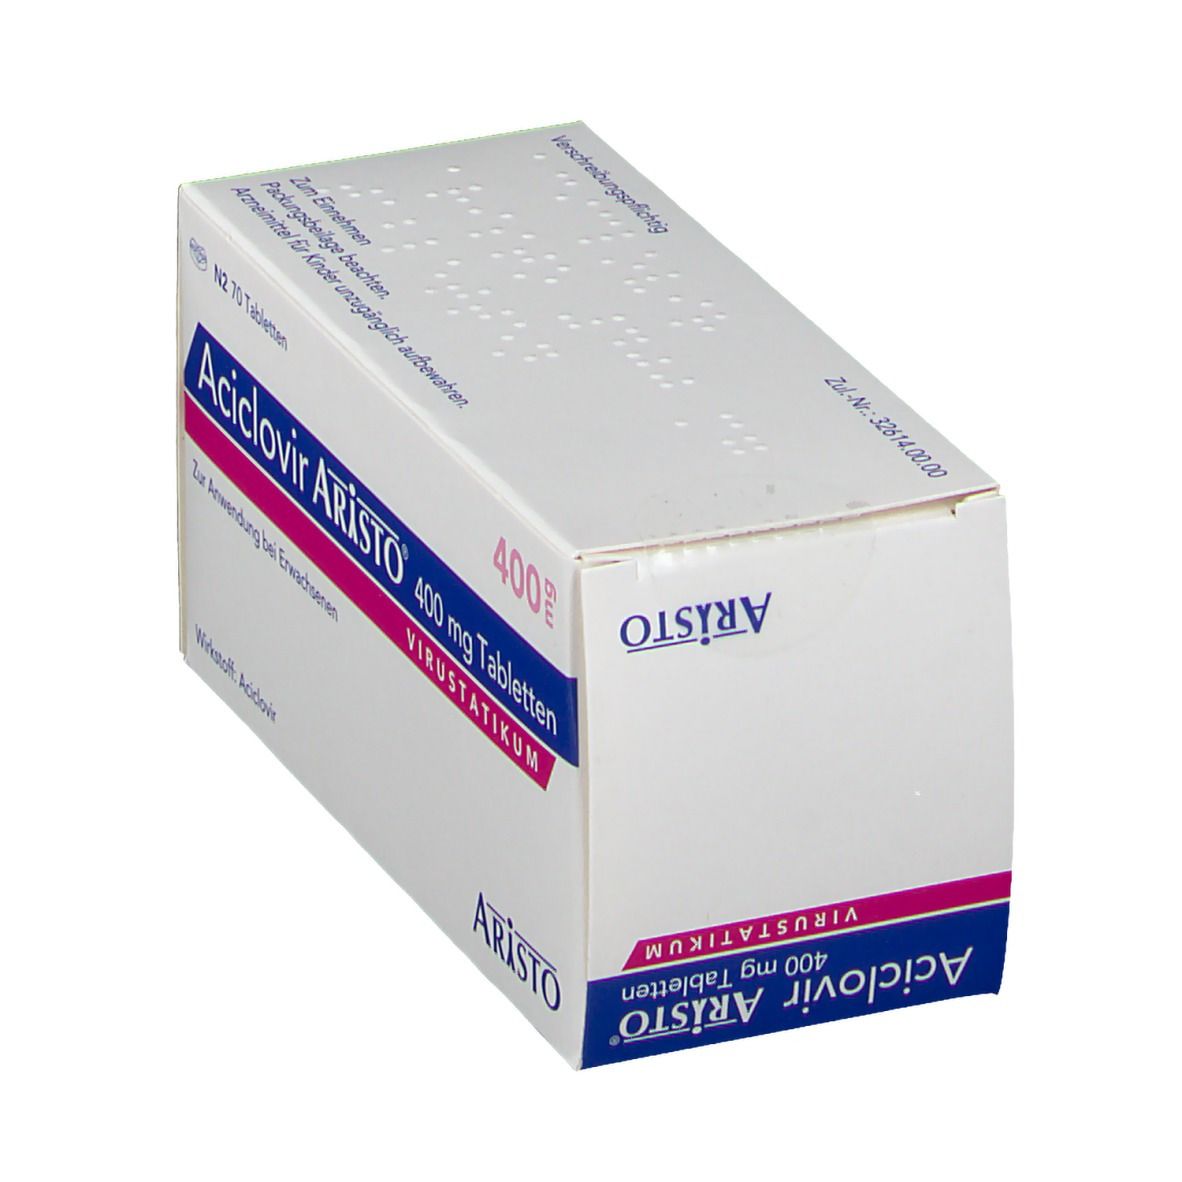 Aciclovir Aristo® 400 mg